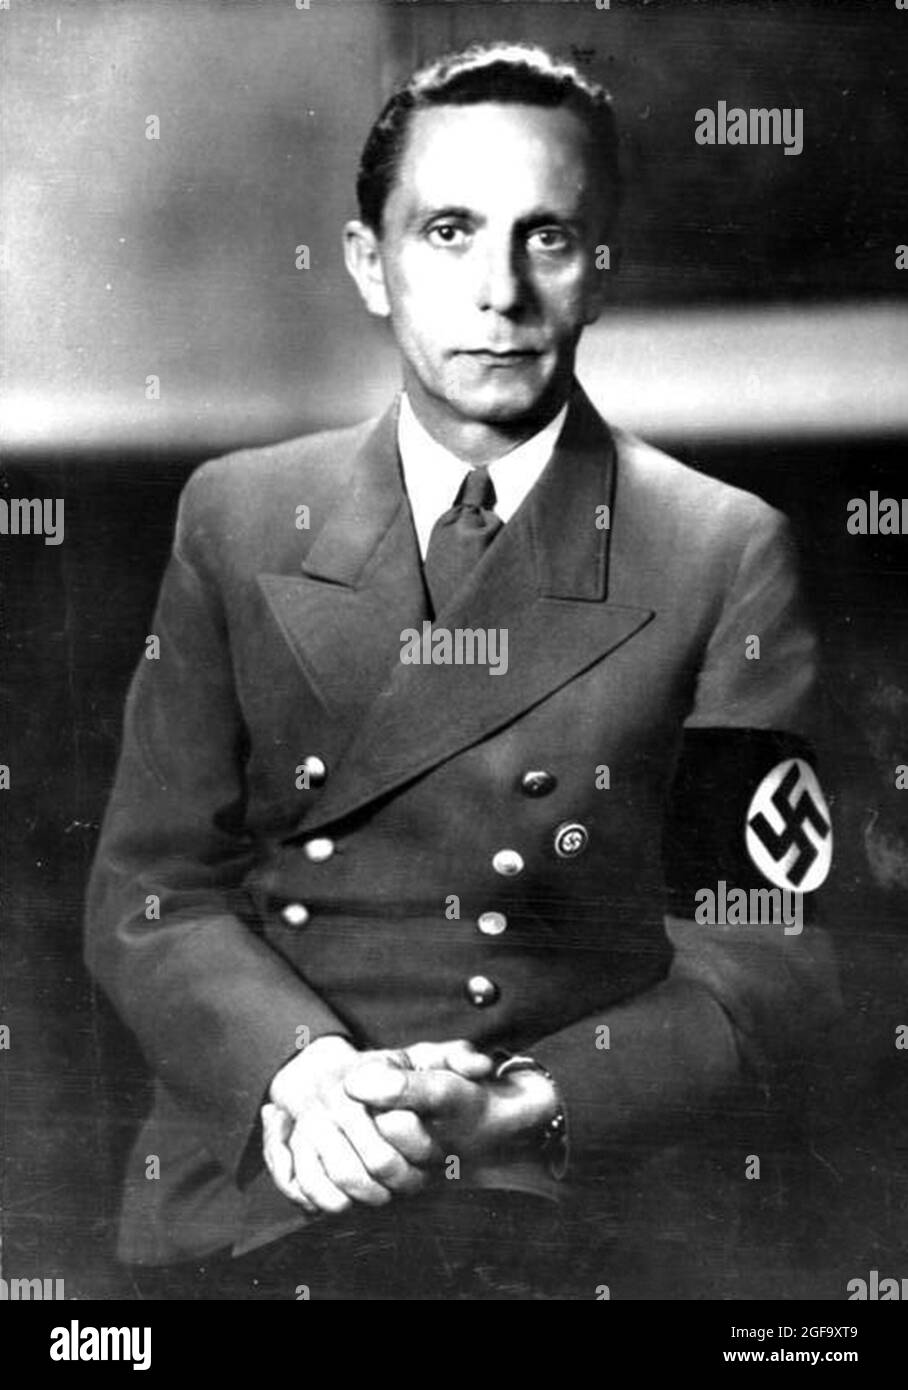 Un portrait du chef nazi et ministre de la propagande Joseph Göbbels. Il s'est suicidé avec sa femme après avoir empoisonné leurs 6 enfants dans le bunker en 1945. Crédit: Bundesarchiv allemand Banque D'Images